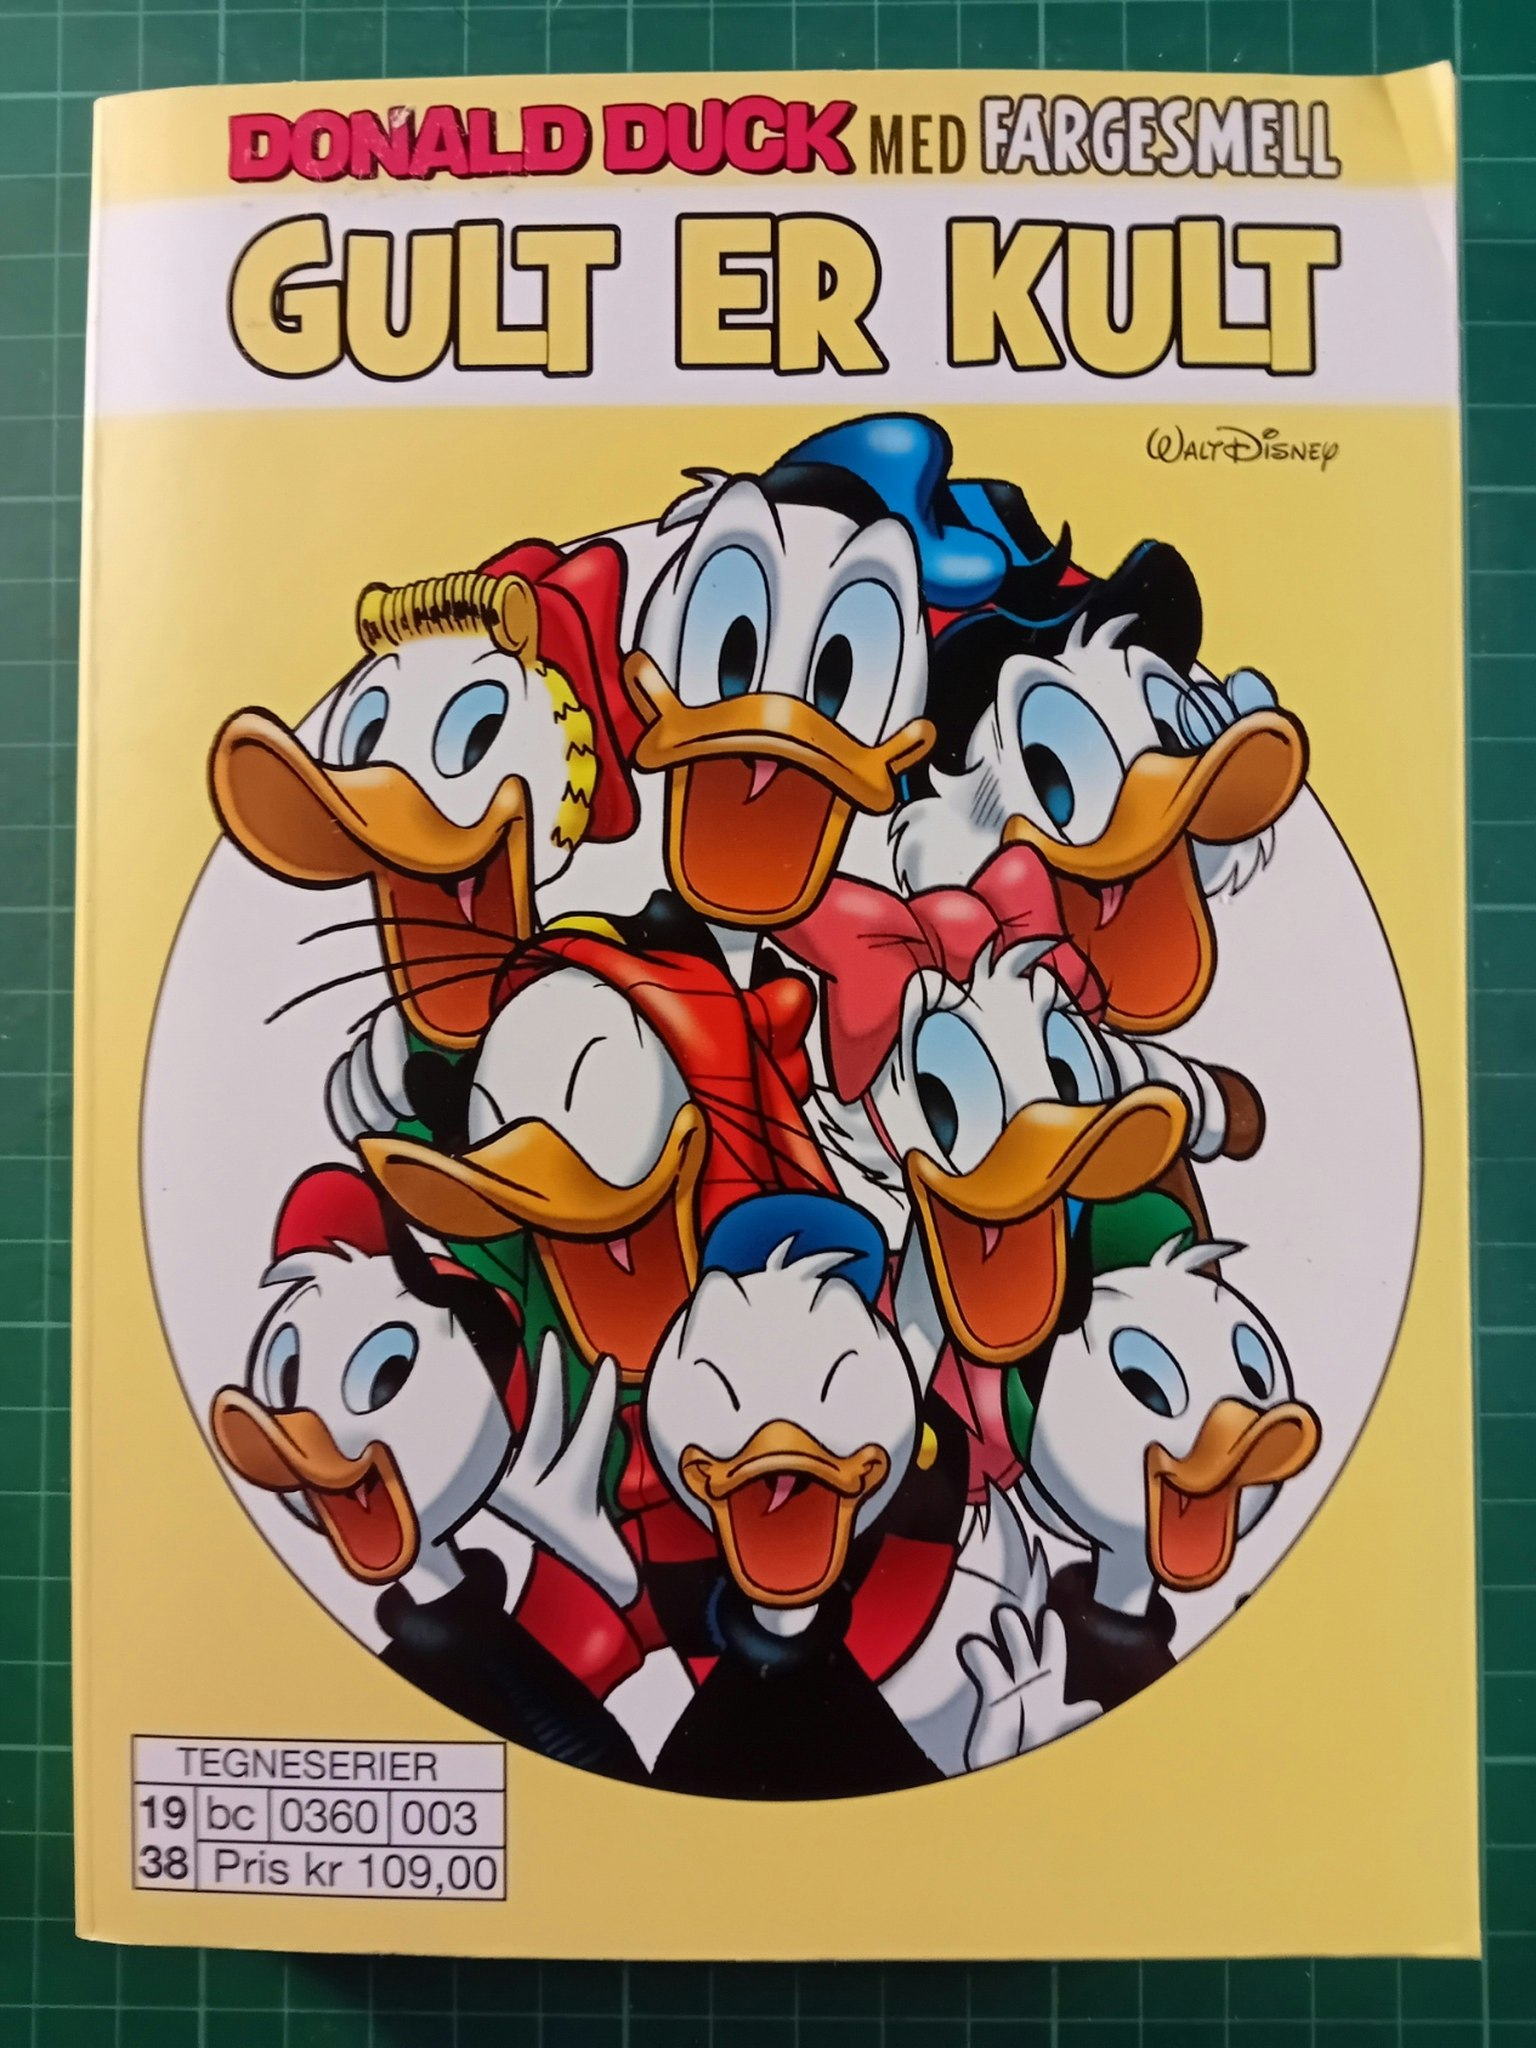 Donald Duck Gult er kult